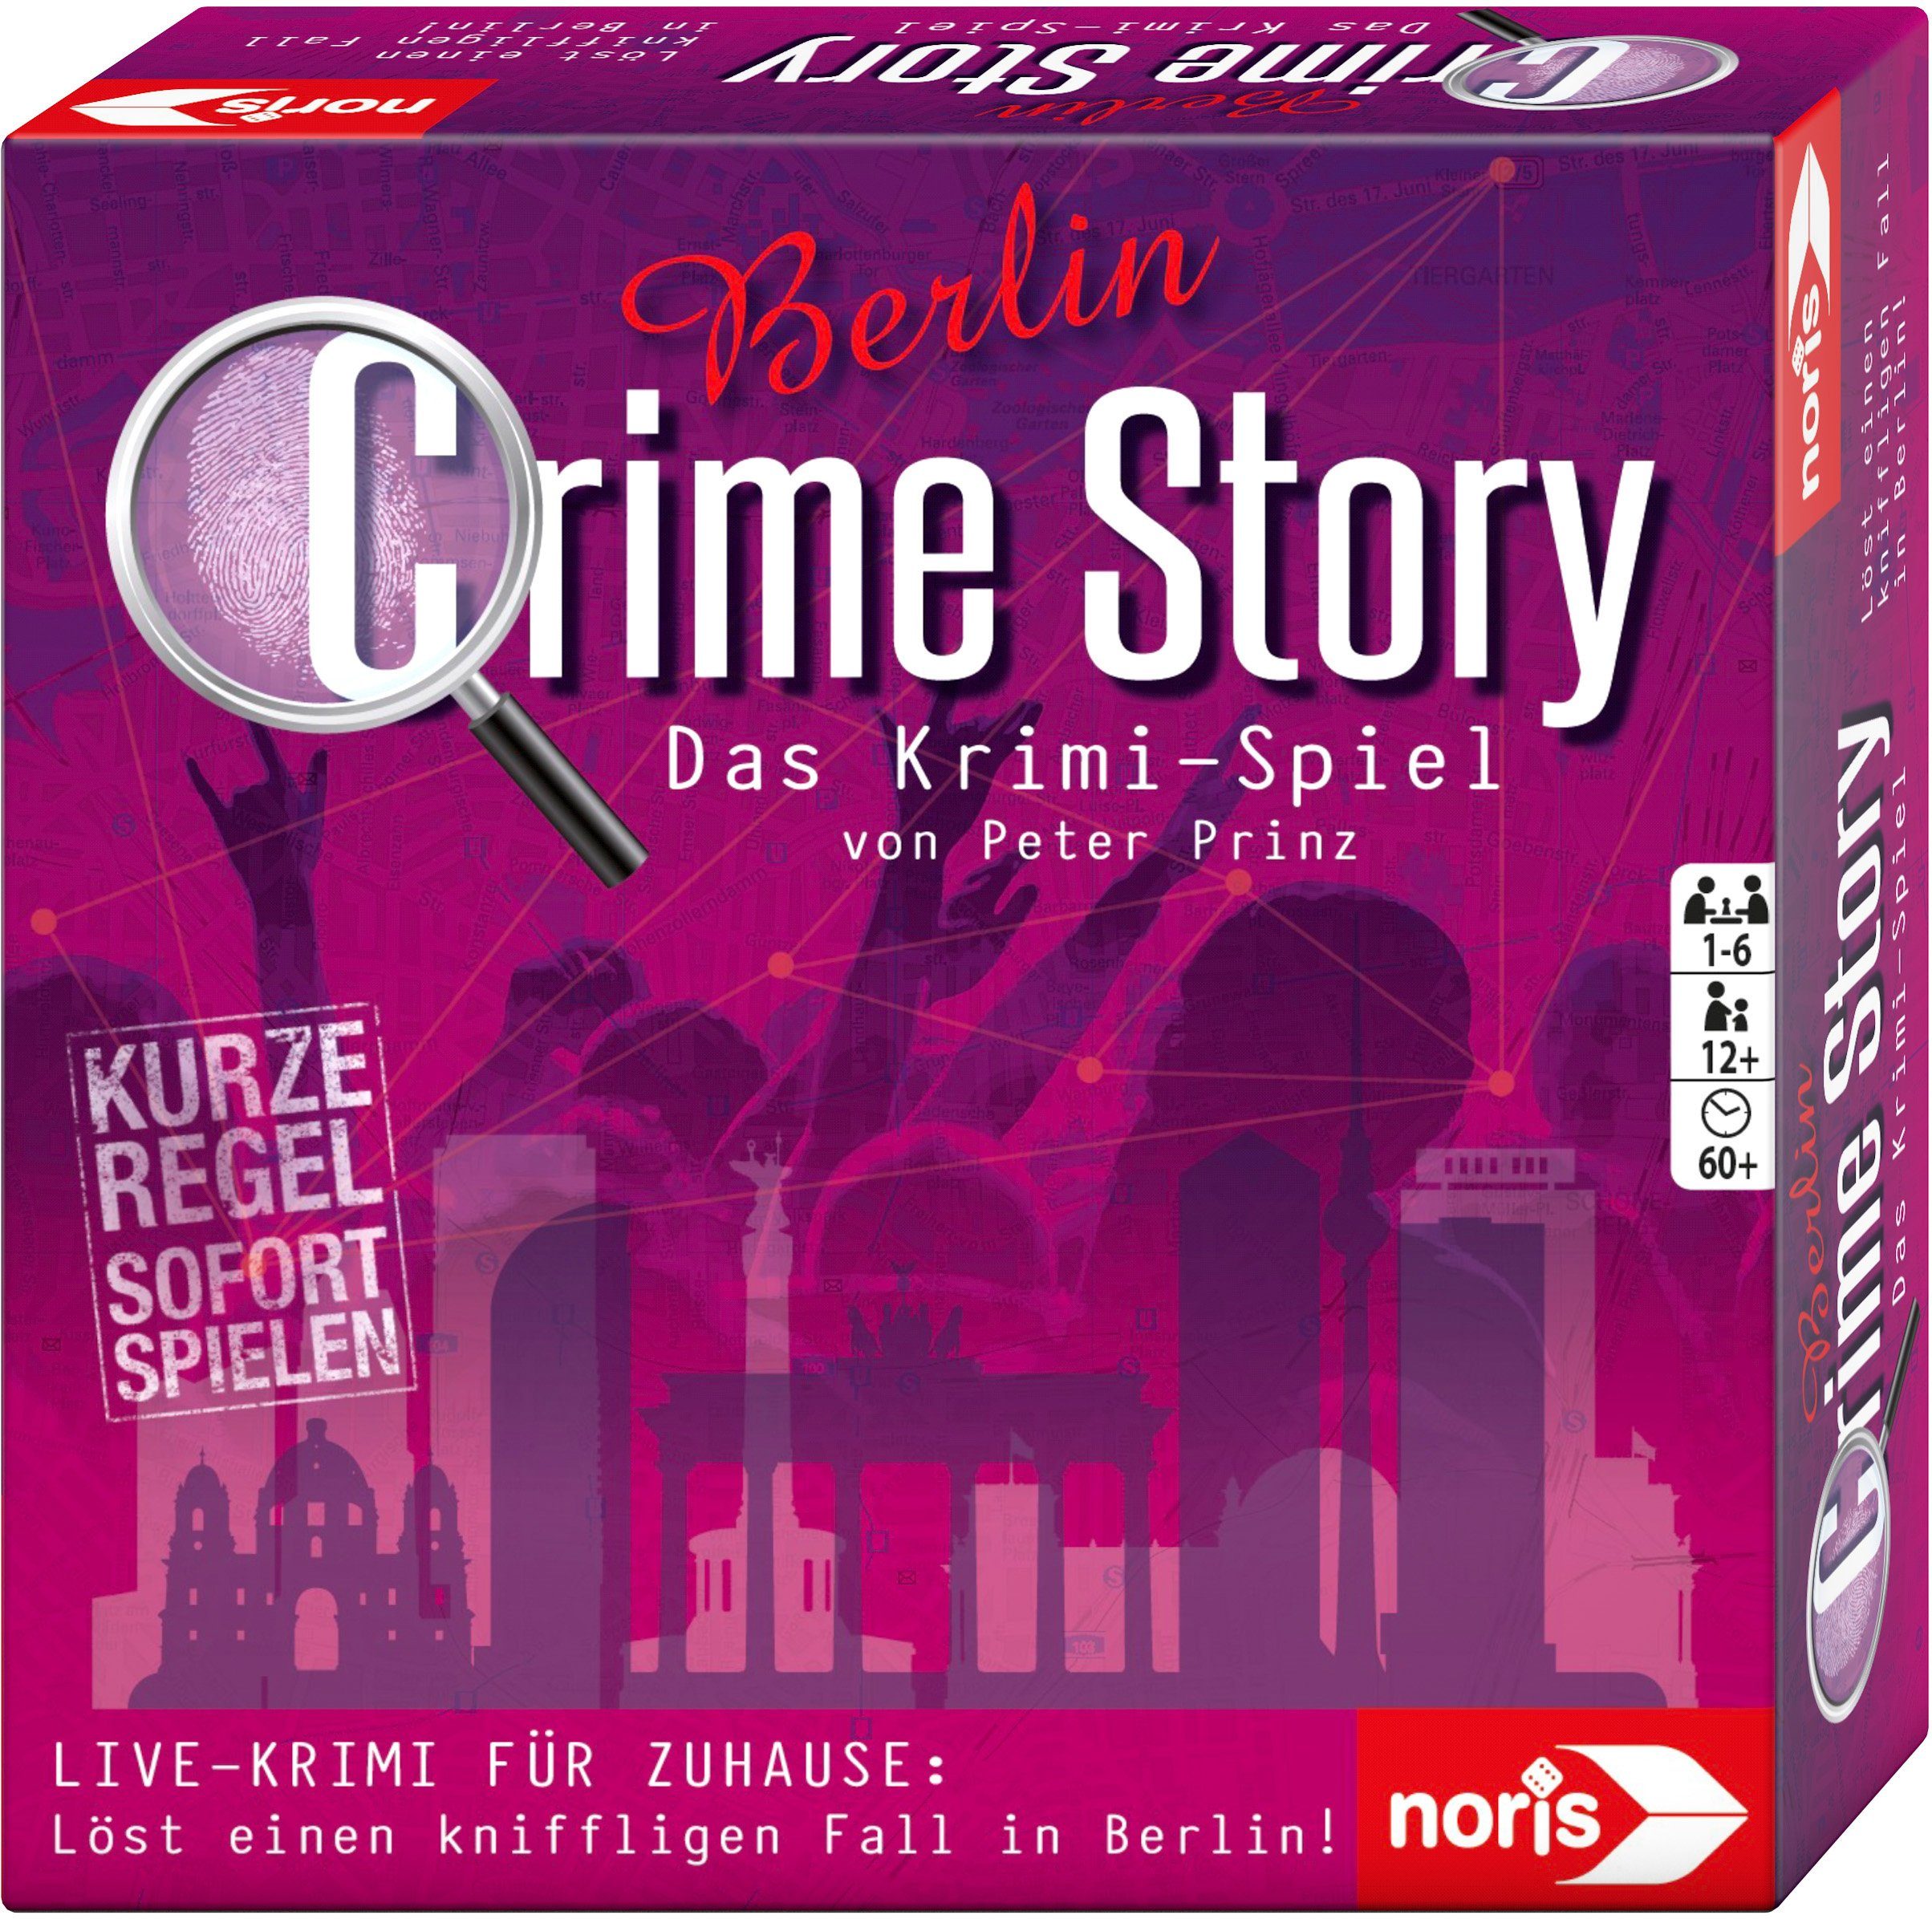 Spiel, Story Made Berlin, Germany Crime - in Noris